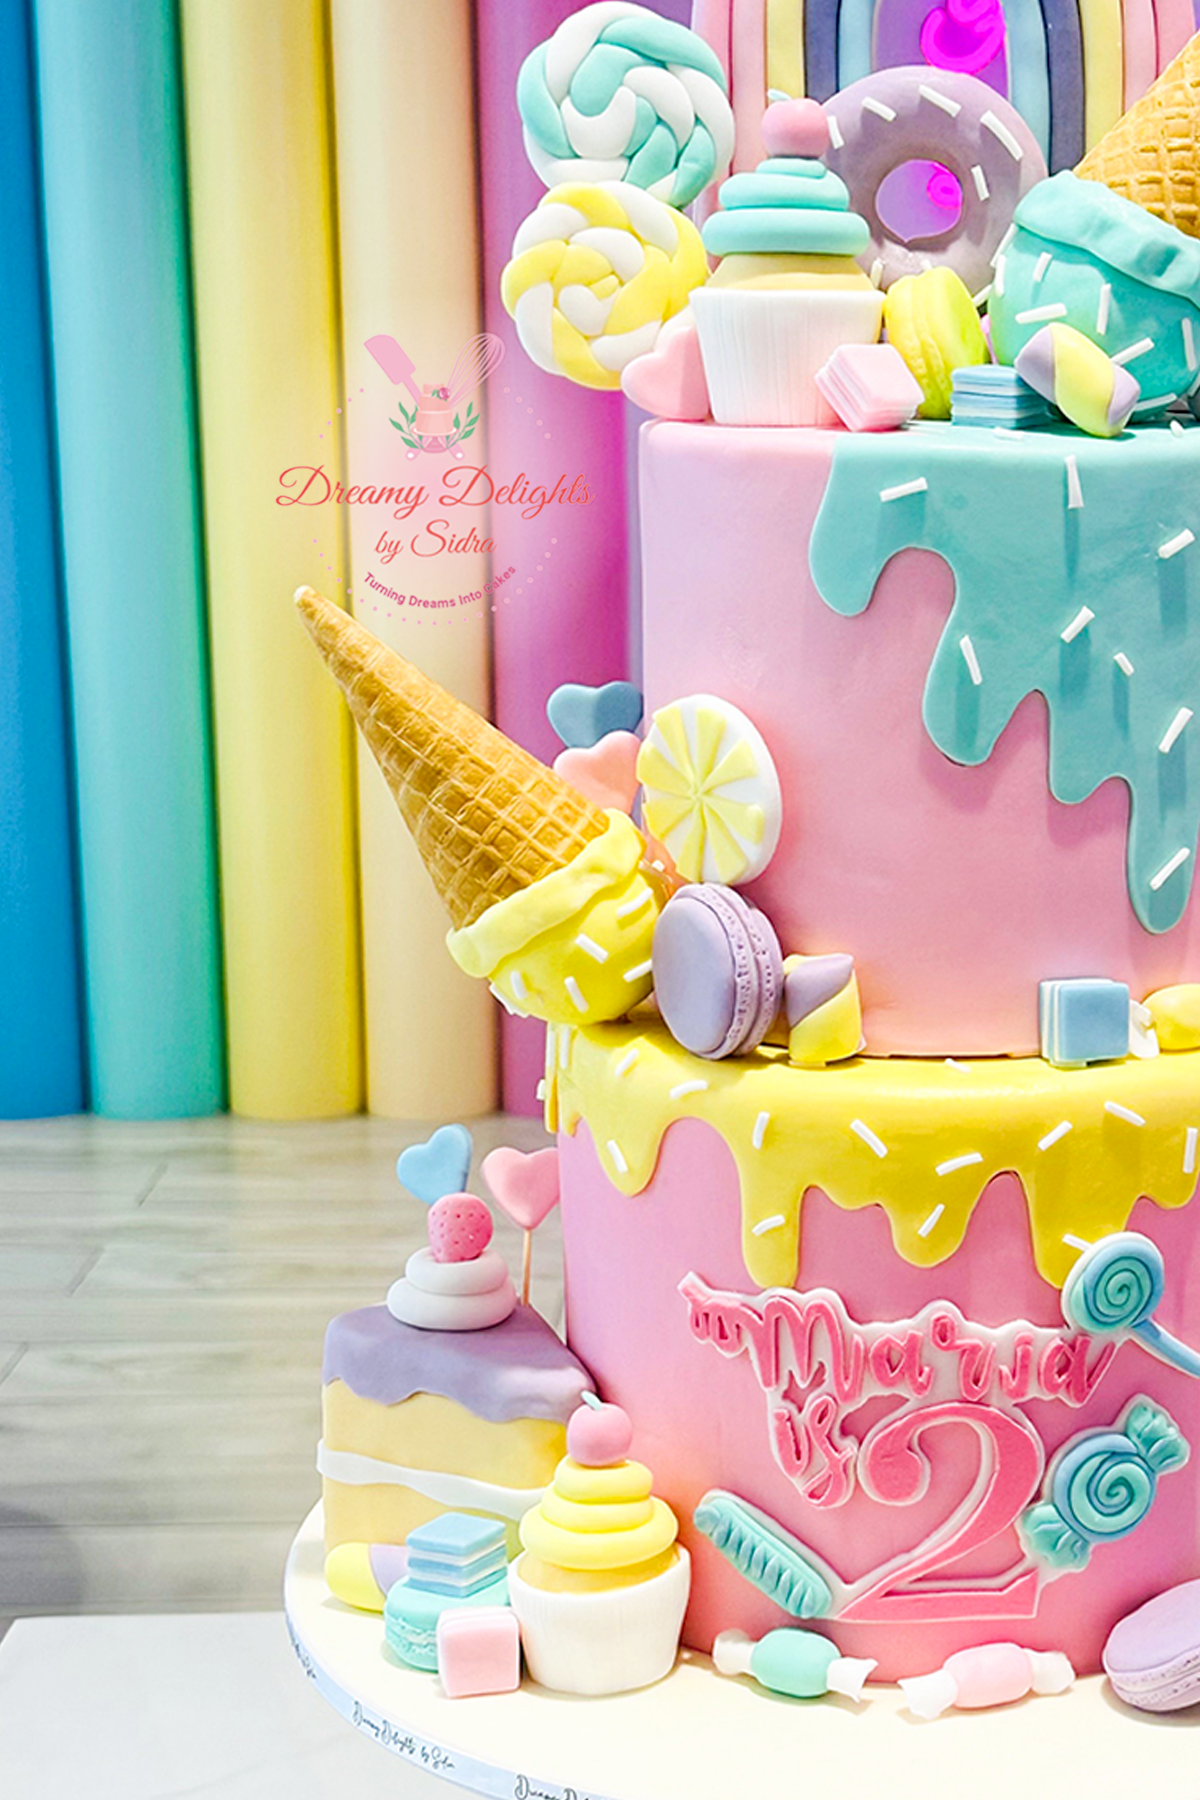 Candyland Cake Designs & Images